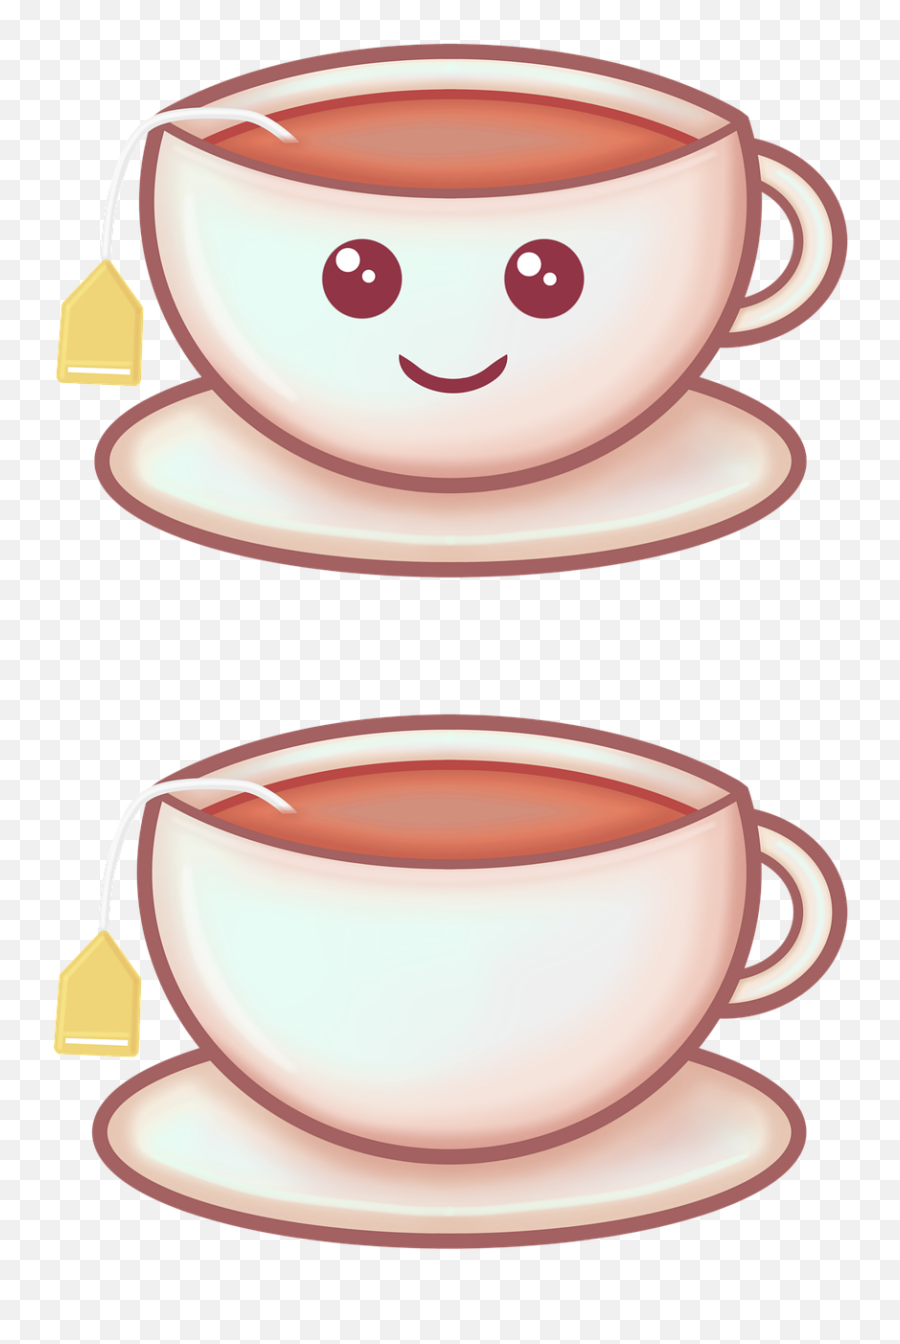 Cup Of Tea Kawaii Drink - Free Image On Pixabay Emoji,Soda Cup Clipart